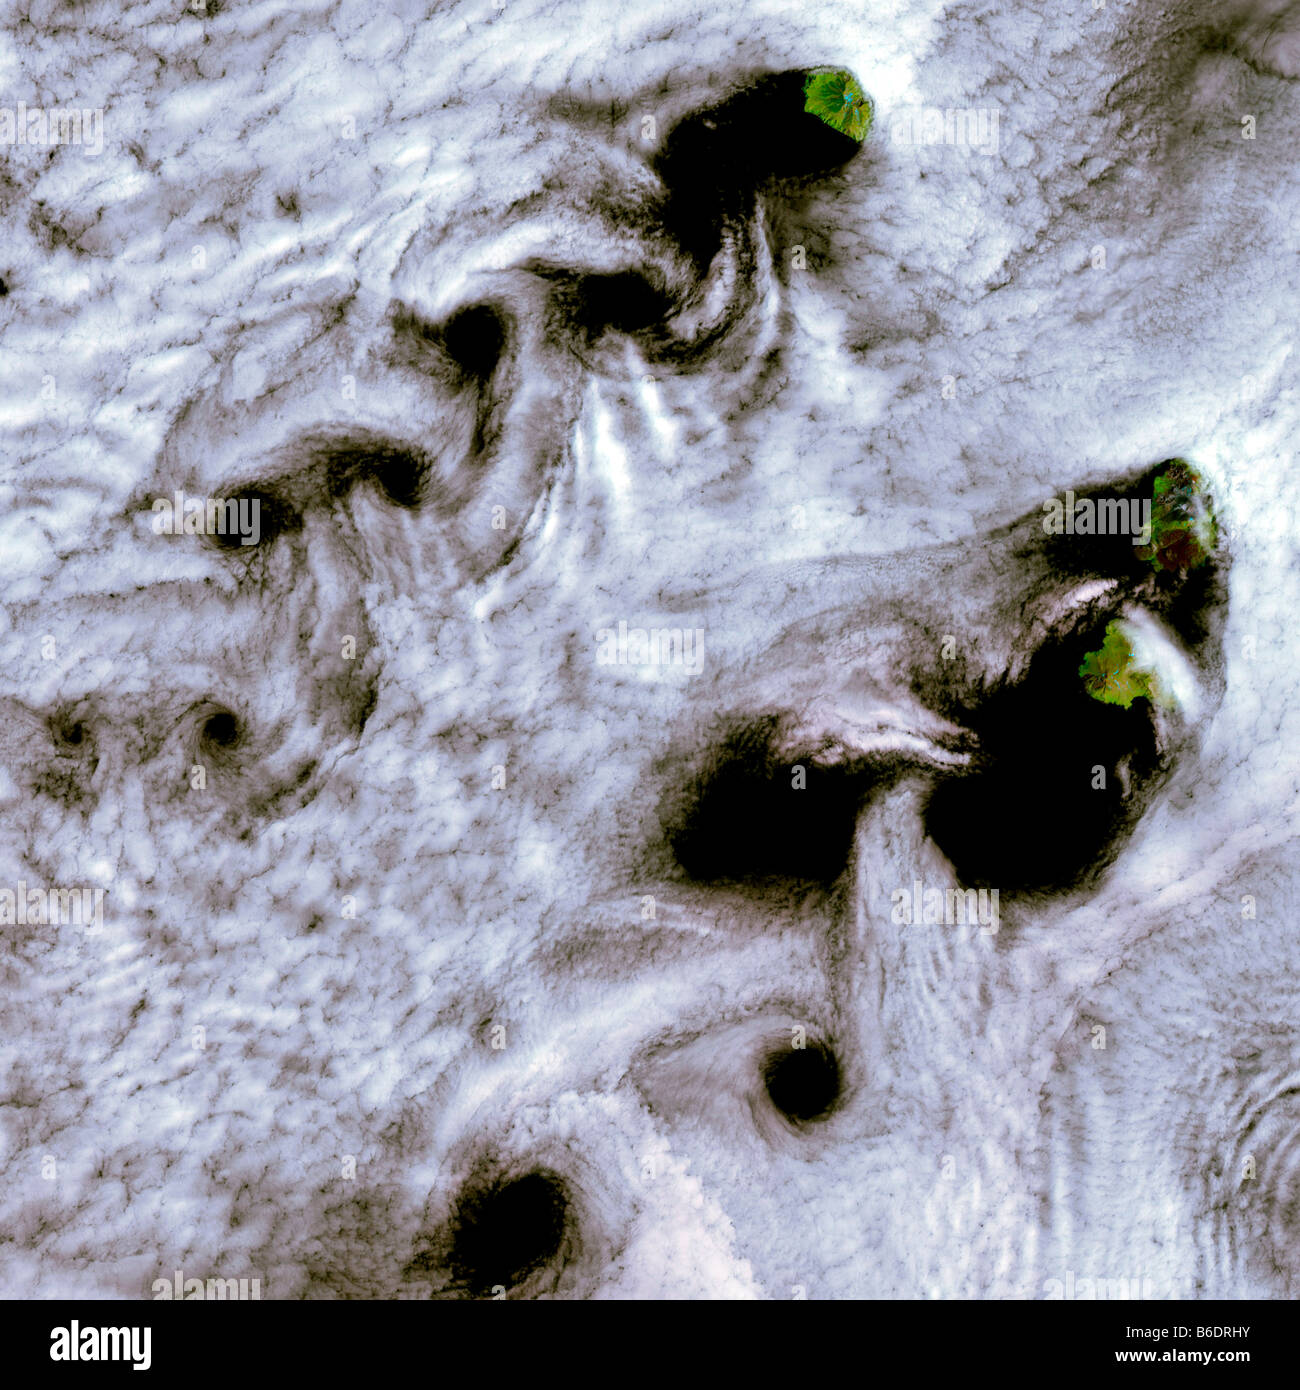 Von Karman vortices. Coloured composite satellite image of clouds forming von Karman vortices. Stock Photo